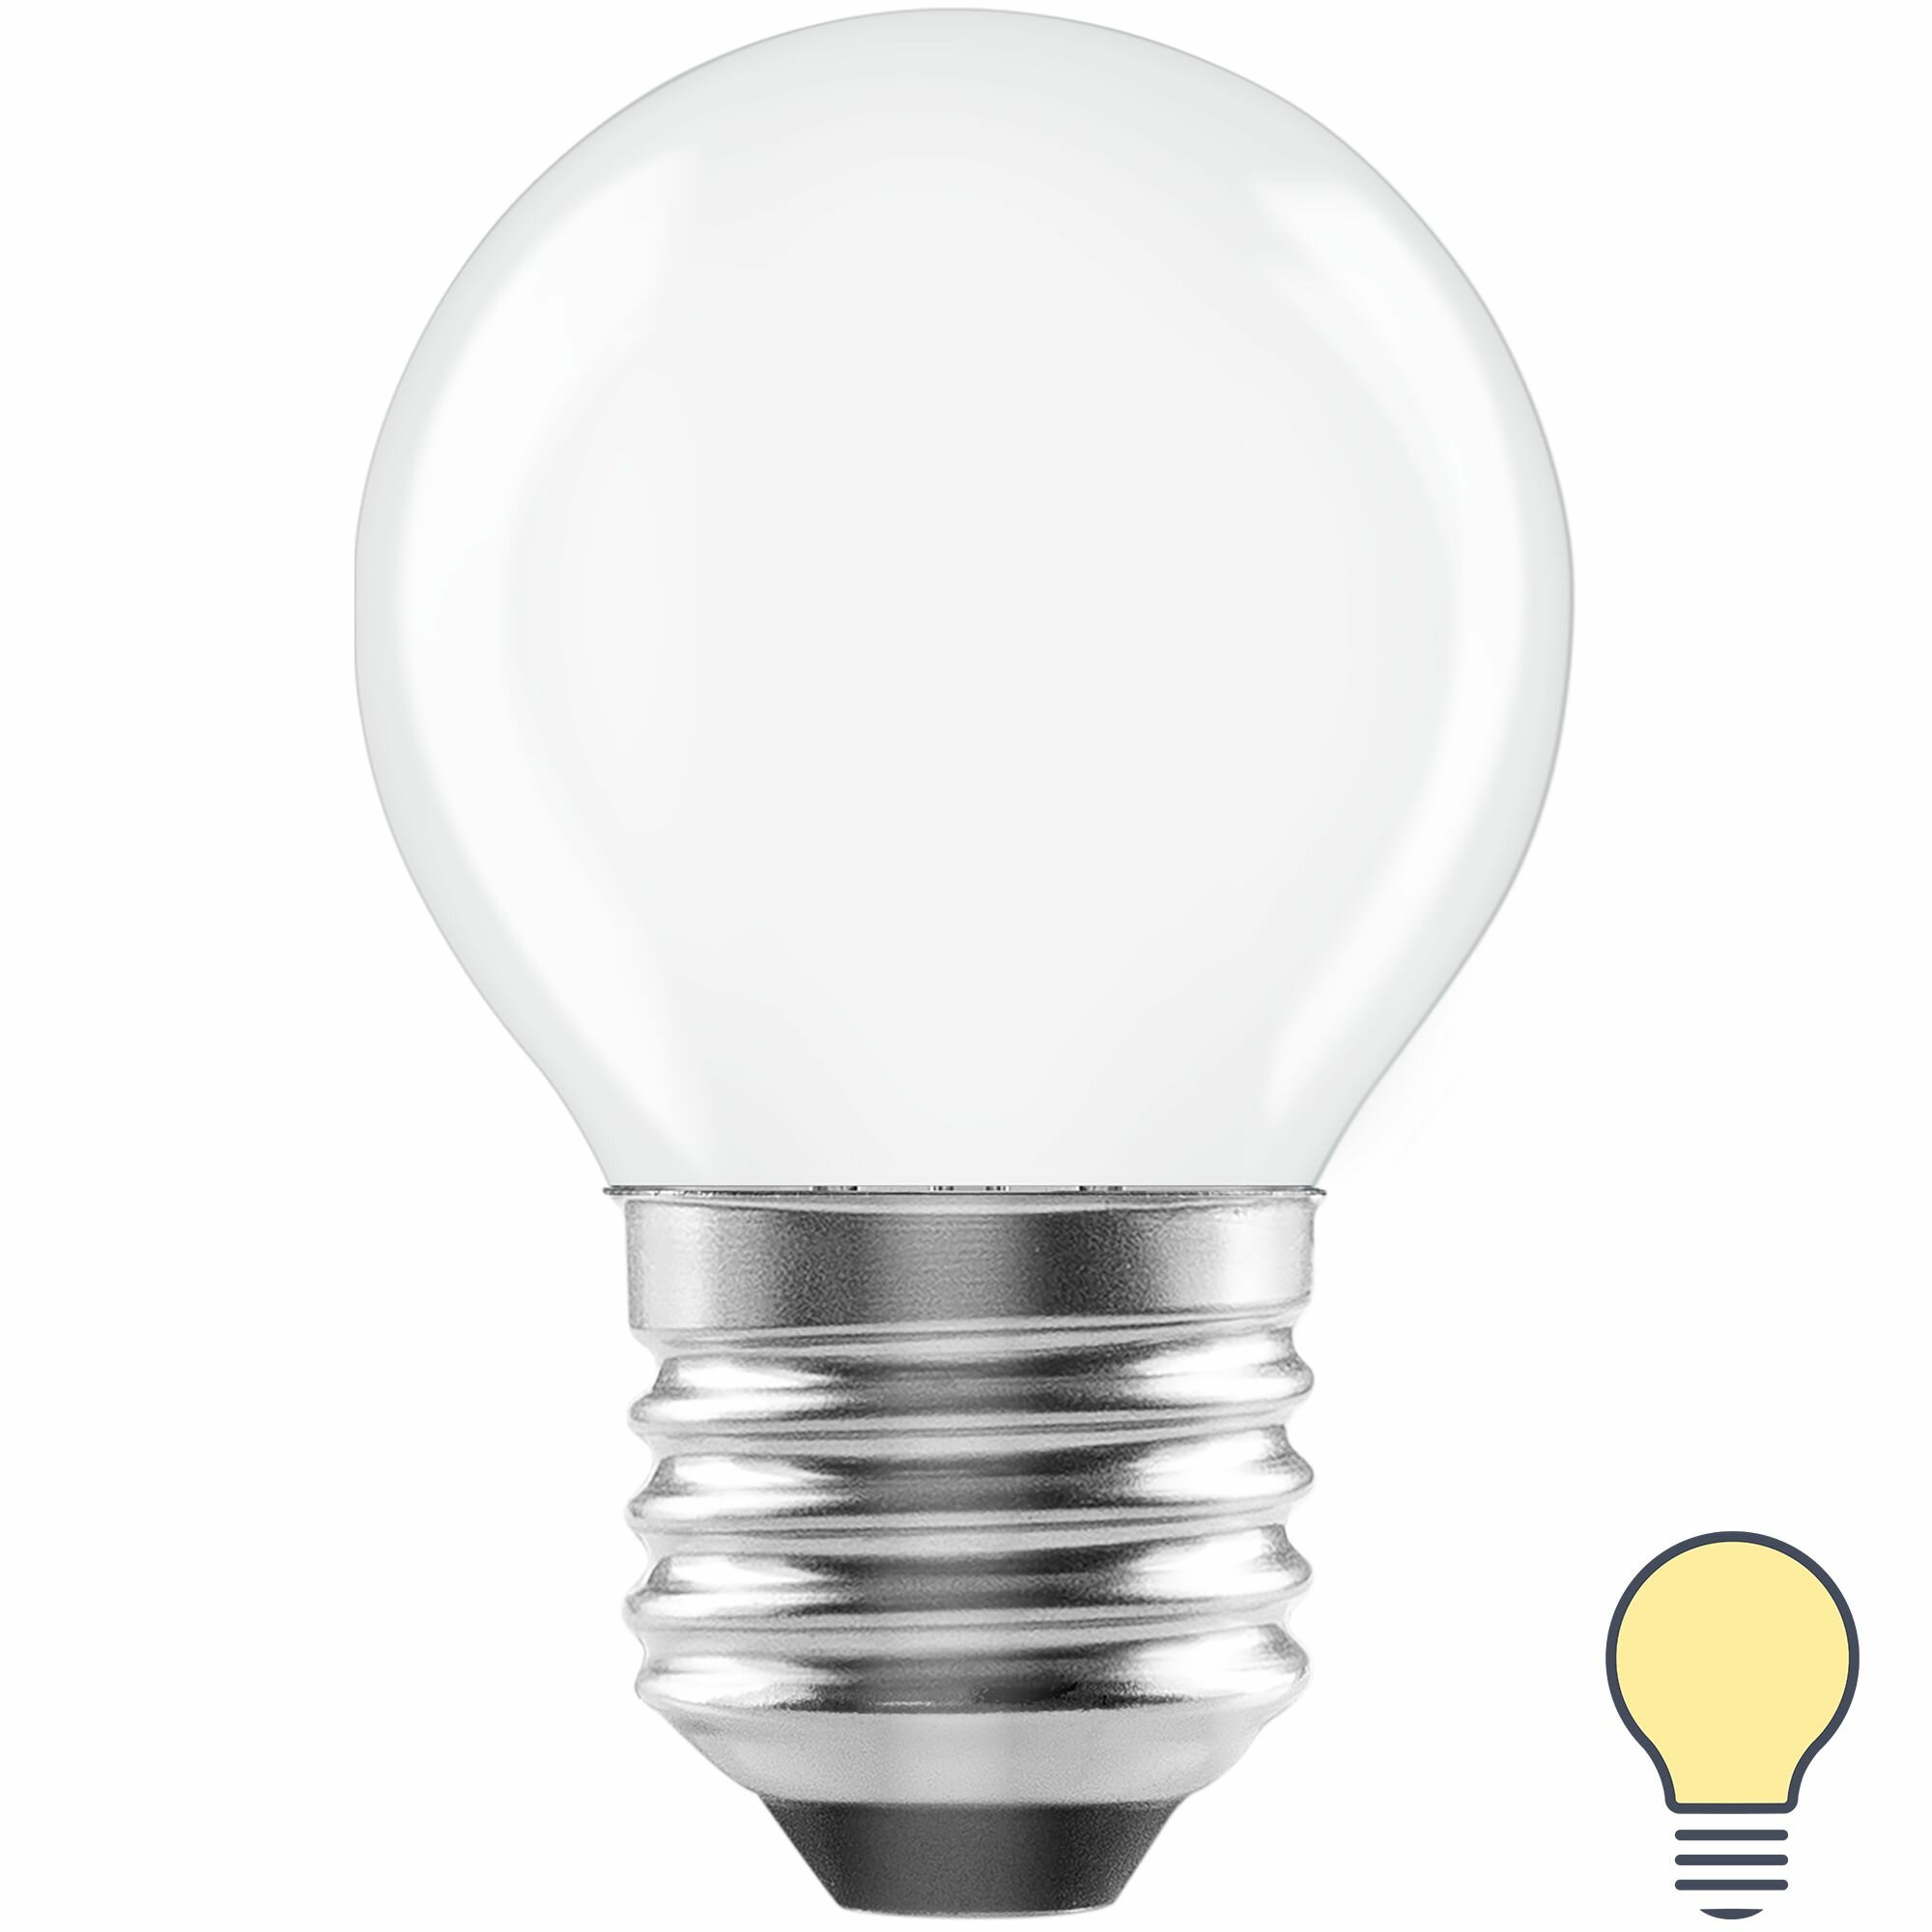 Лампа светодиодная Lexman E27 220-240 В 5 Вт шар матовая 600 лм теплый белый свет